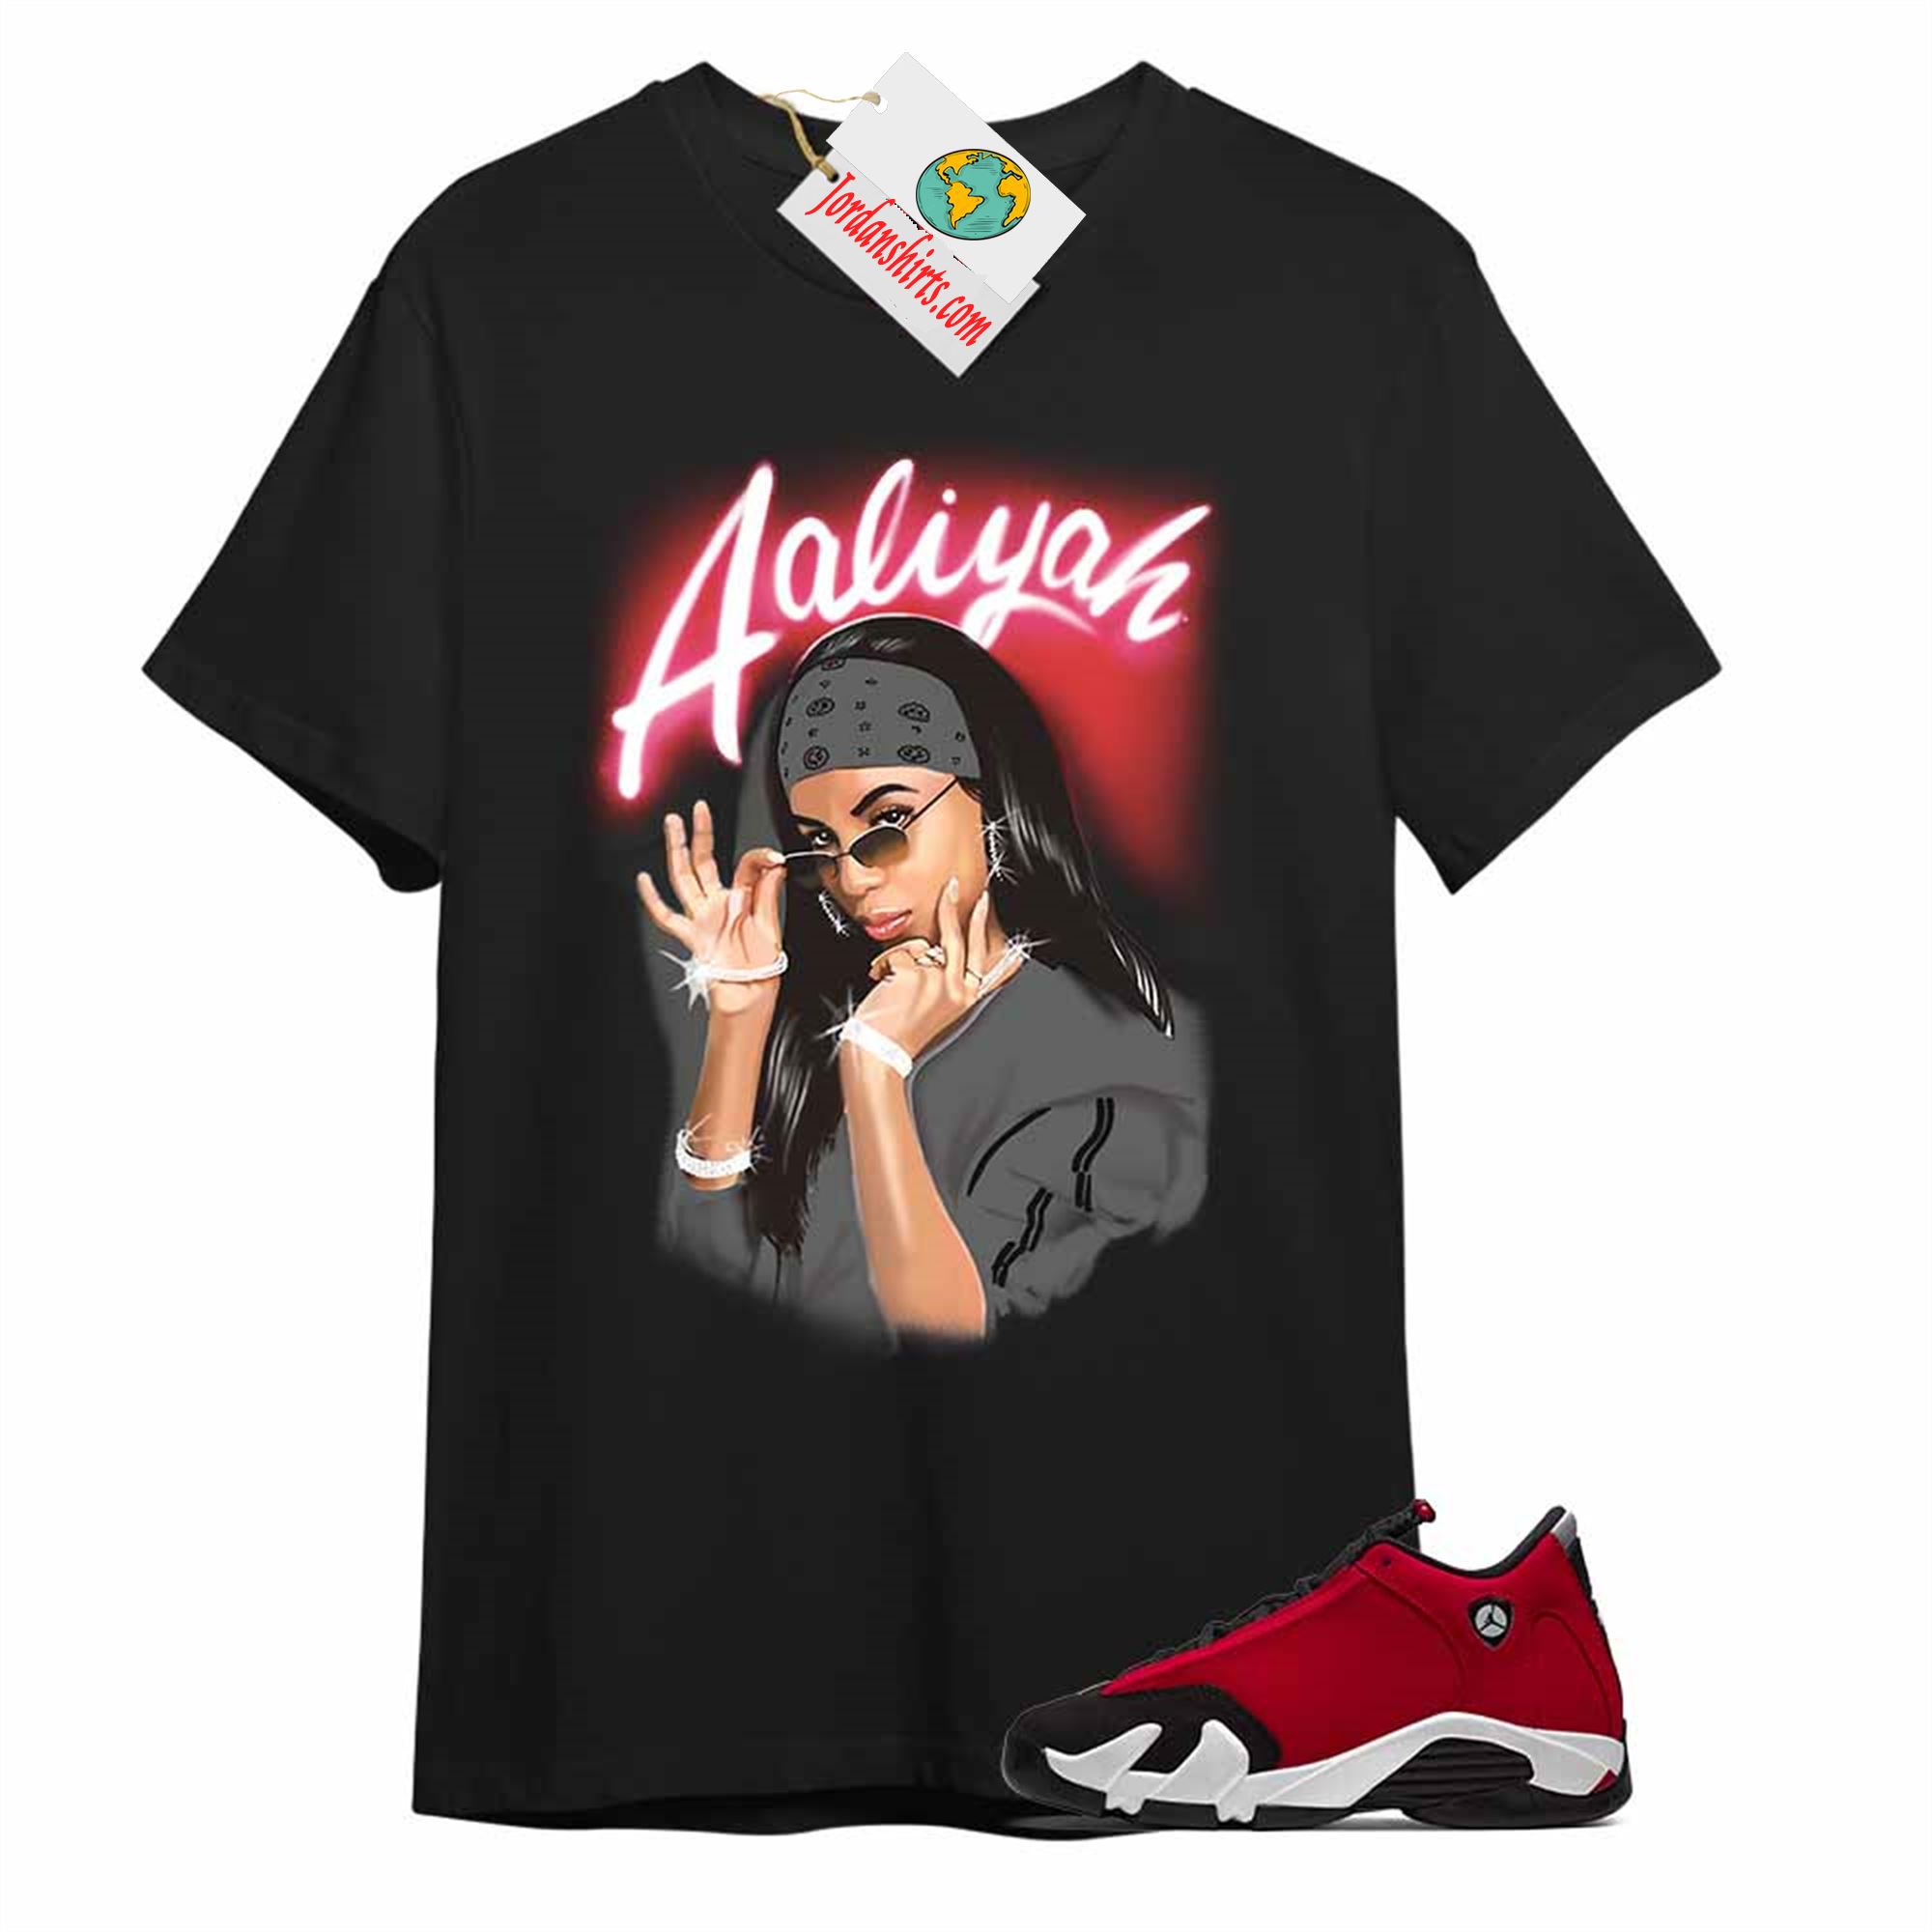 Jordan 14 Shirt, Aaliyah Airbrush Black T-shirt Air Jordan 14 Gym Red 14s Size Up To 5xl